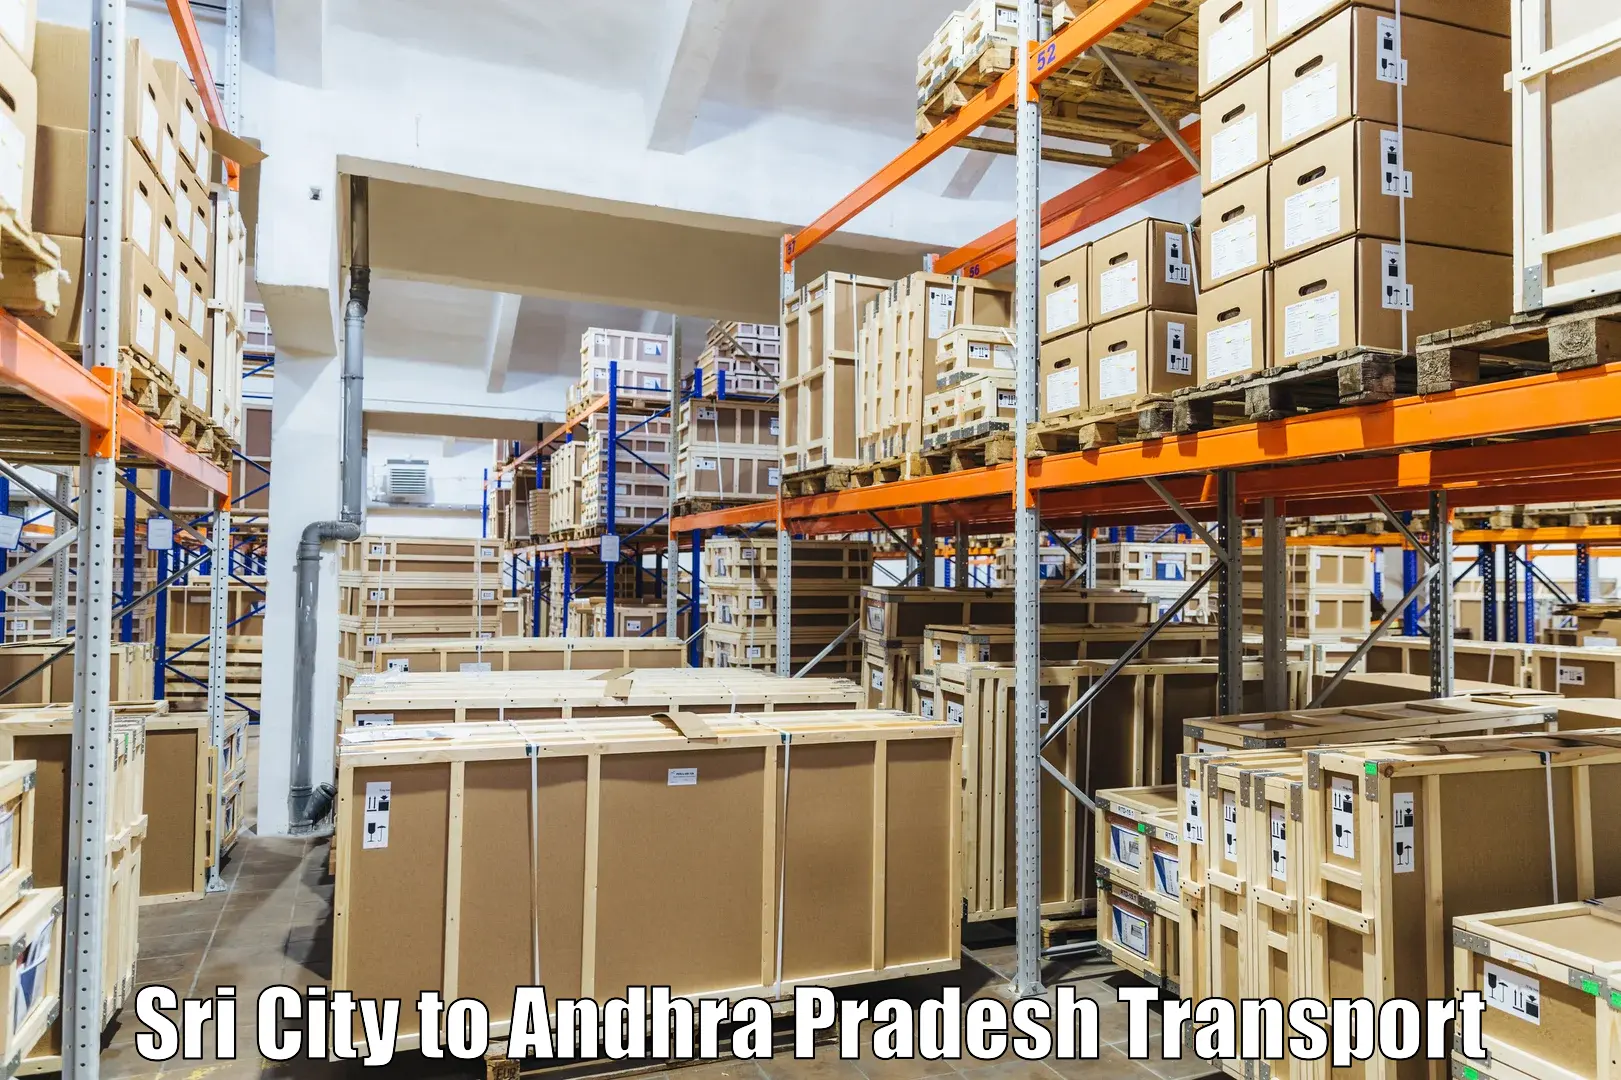 Vehicle transport services Sri City to Koruprolu